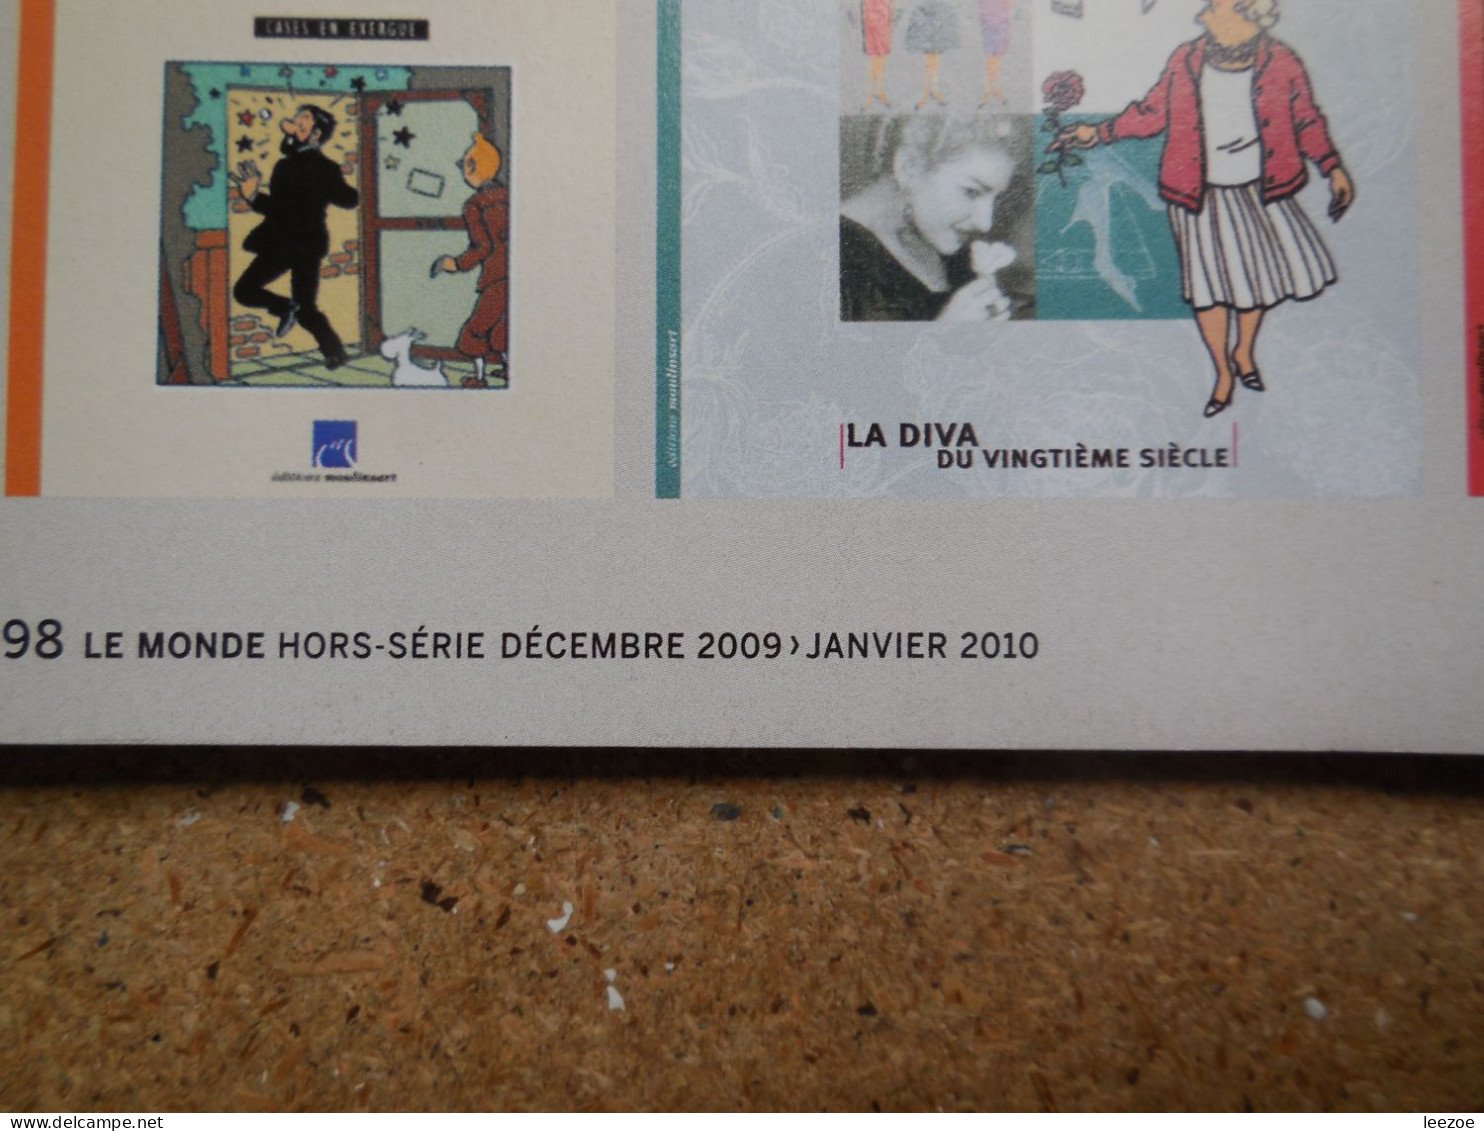 Tintin - Divers 2009. Tintin - le retour, Hergé  chez Le Monde (Hors Série) - 2009 avec carte de voeux Bonne Année...N5